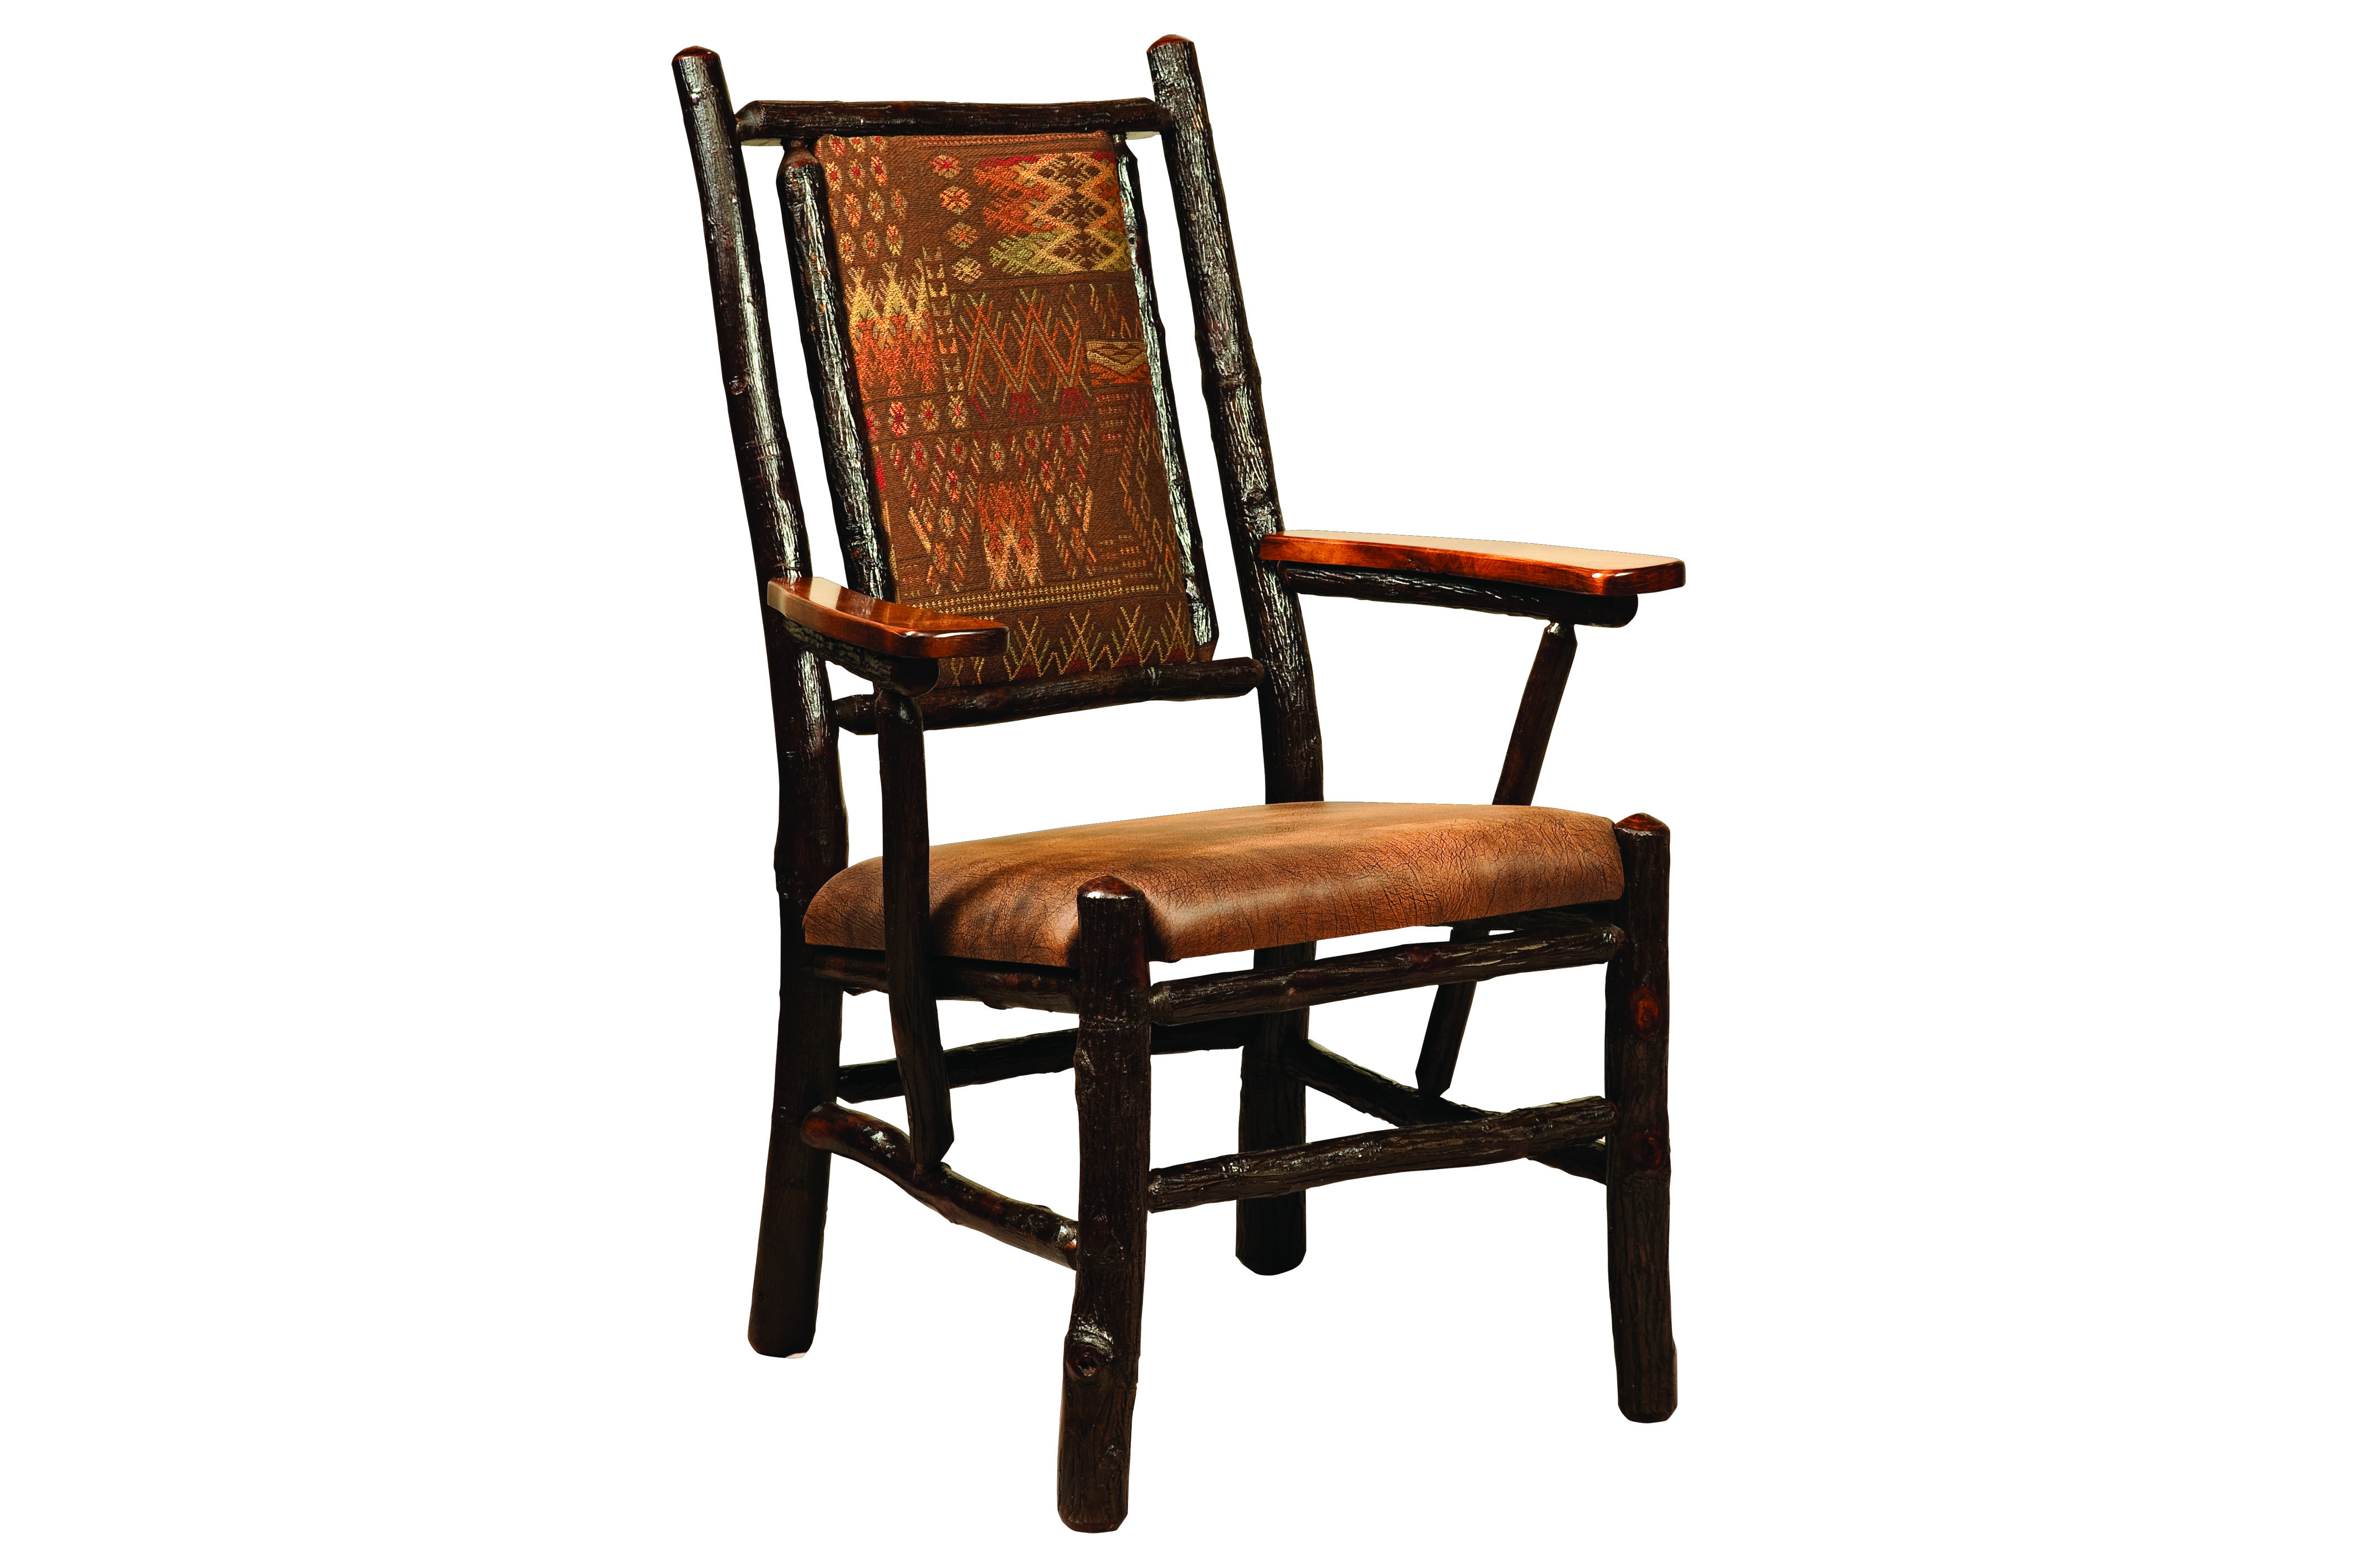 https://0201.nccdn.net/4_2/000/000/056/7dc/158_Fireside-Chair-Fabric-4256x2832.jpg